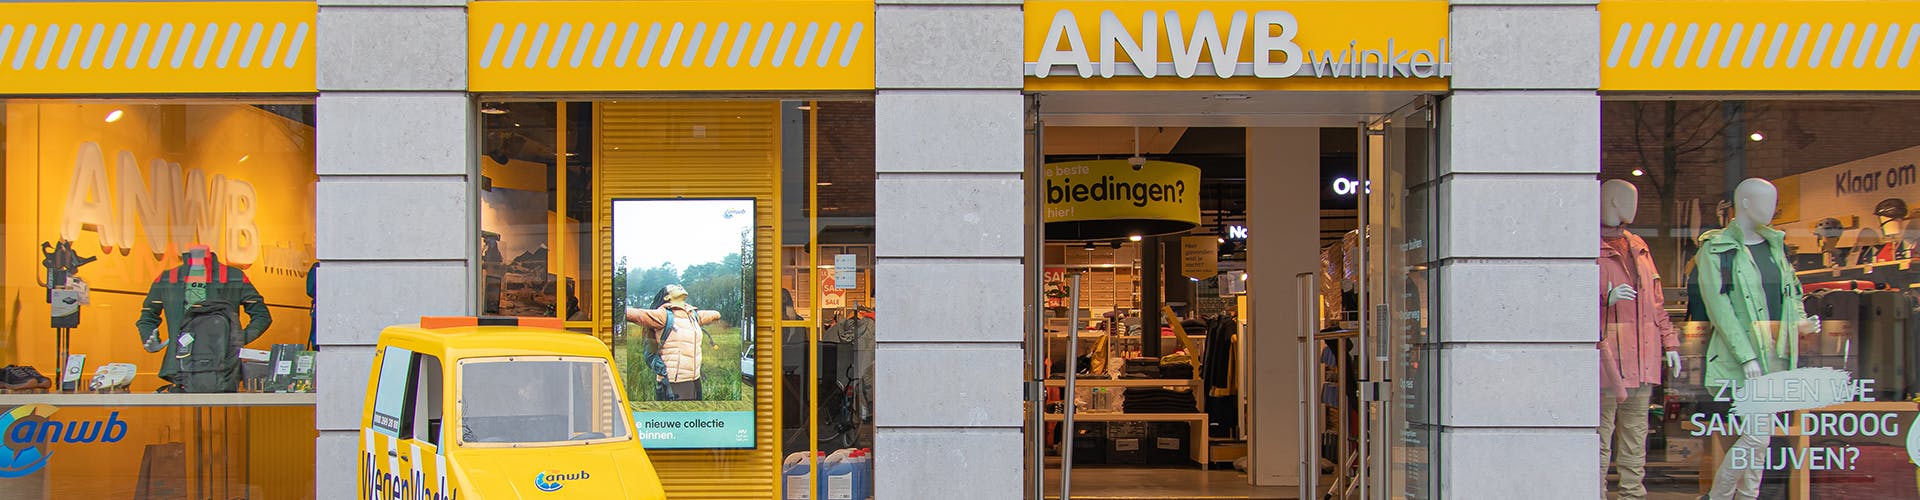 Verward zijn Storing Gezamenlijke selectie ANWB Winkel Dordrecht | ANWB Webwinkel